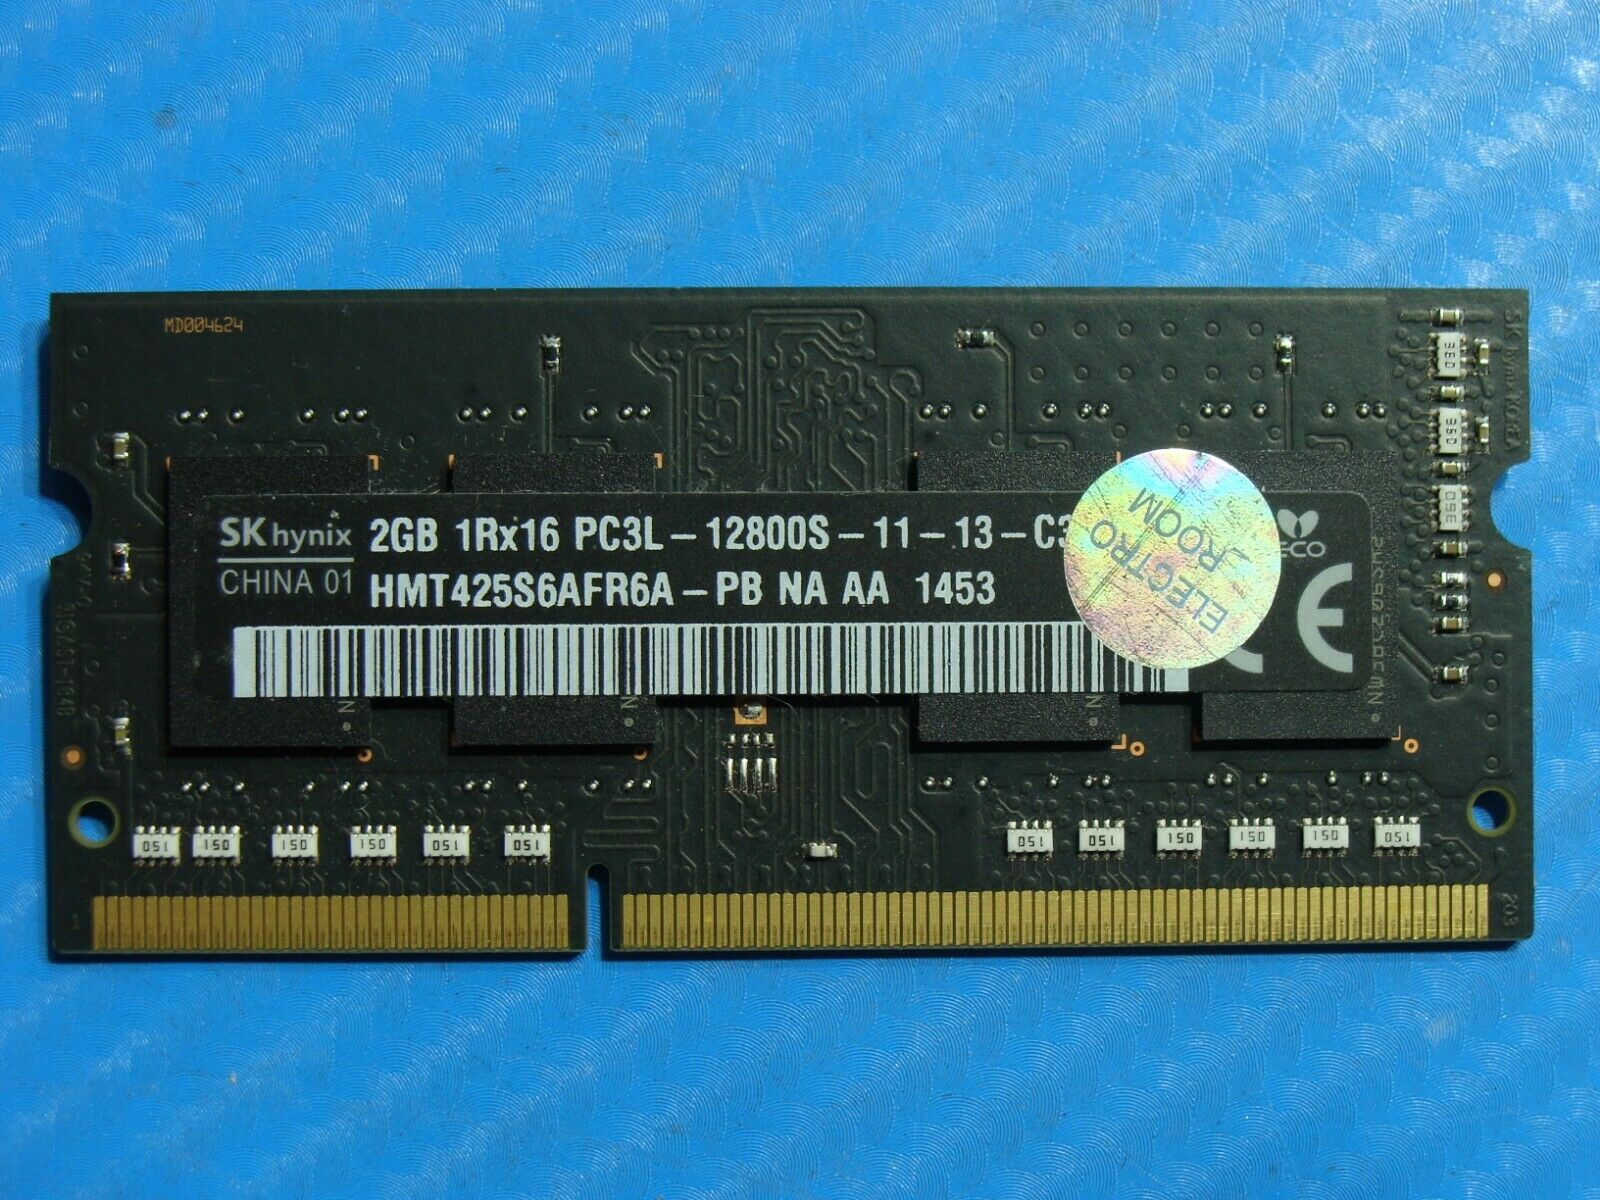 MacBook A1278 So-Dimm SK Hynix 2GB Memory pc3l-12800s-11-13-c3 hmt425s6afr6a-pb 